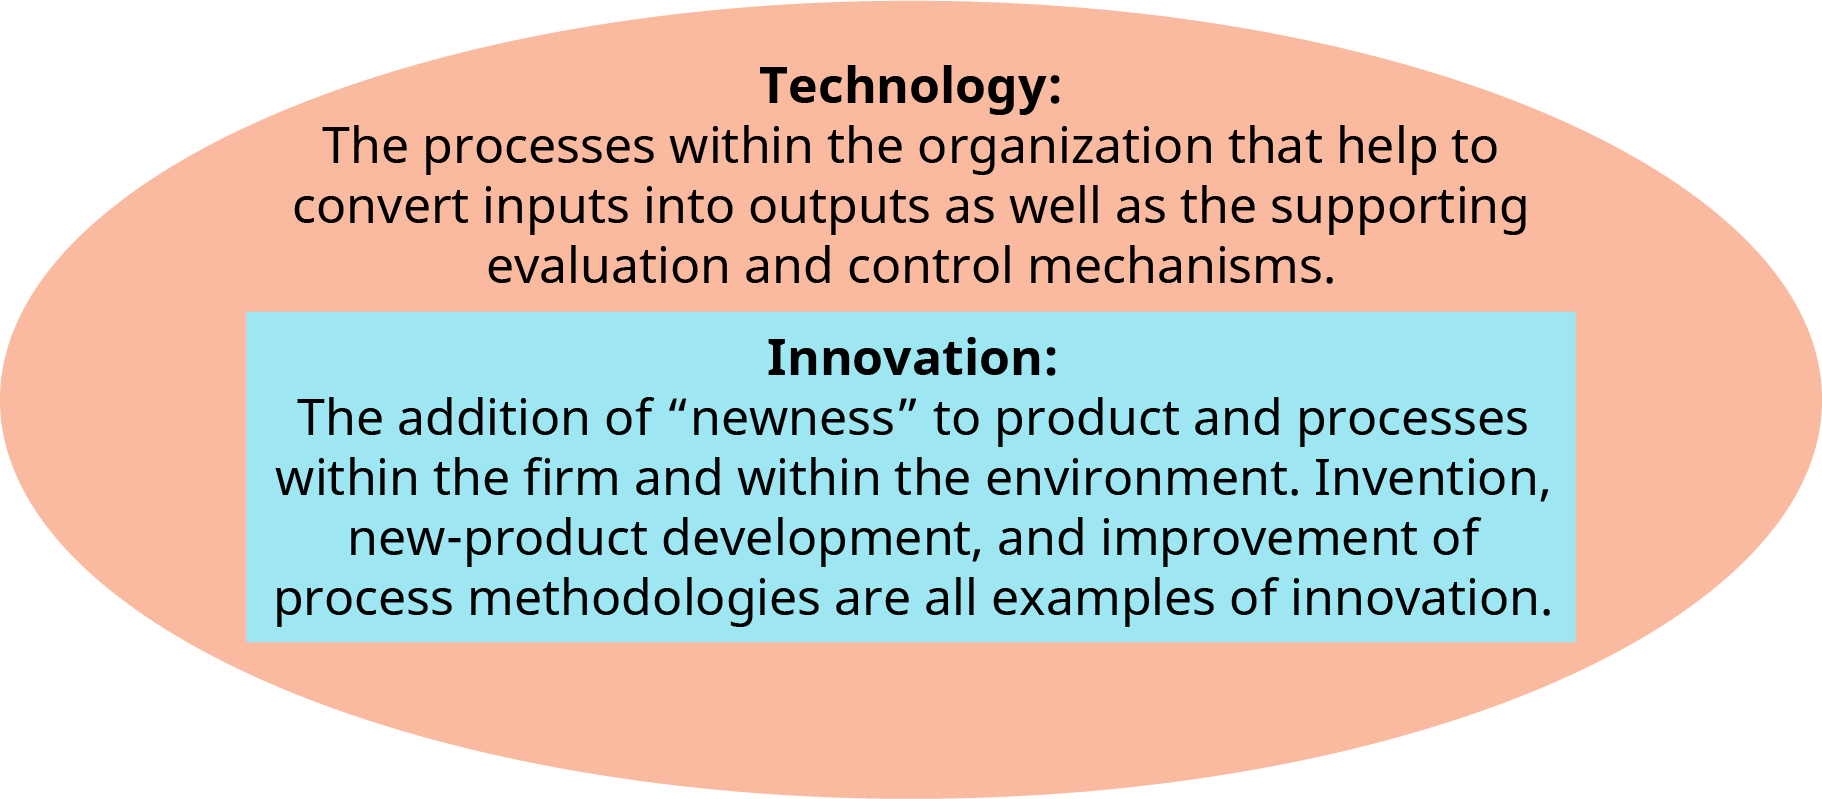 Una ilustración muestra las definiciones de los términos “Tecnología” e “Innovación” superpuestos dentro de un óvalo.